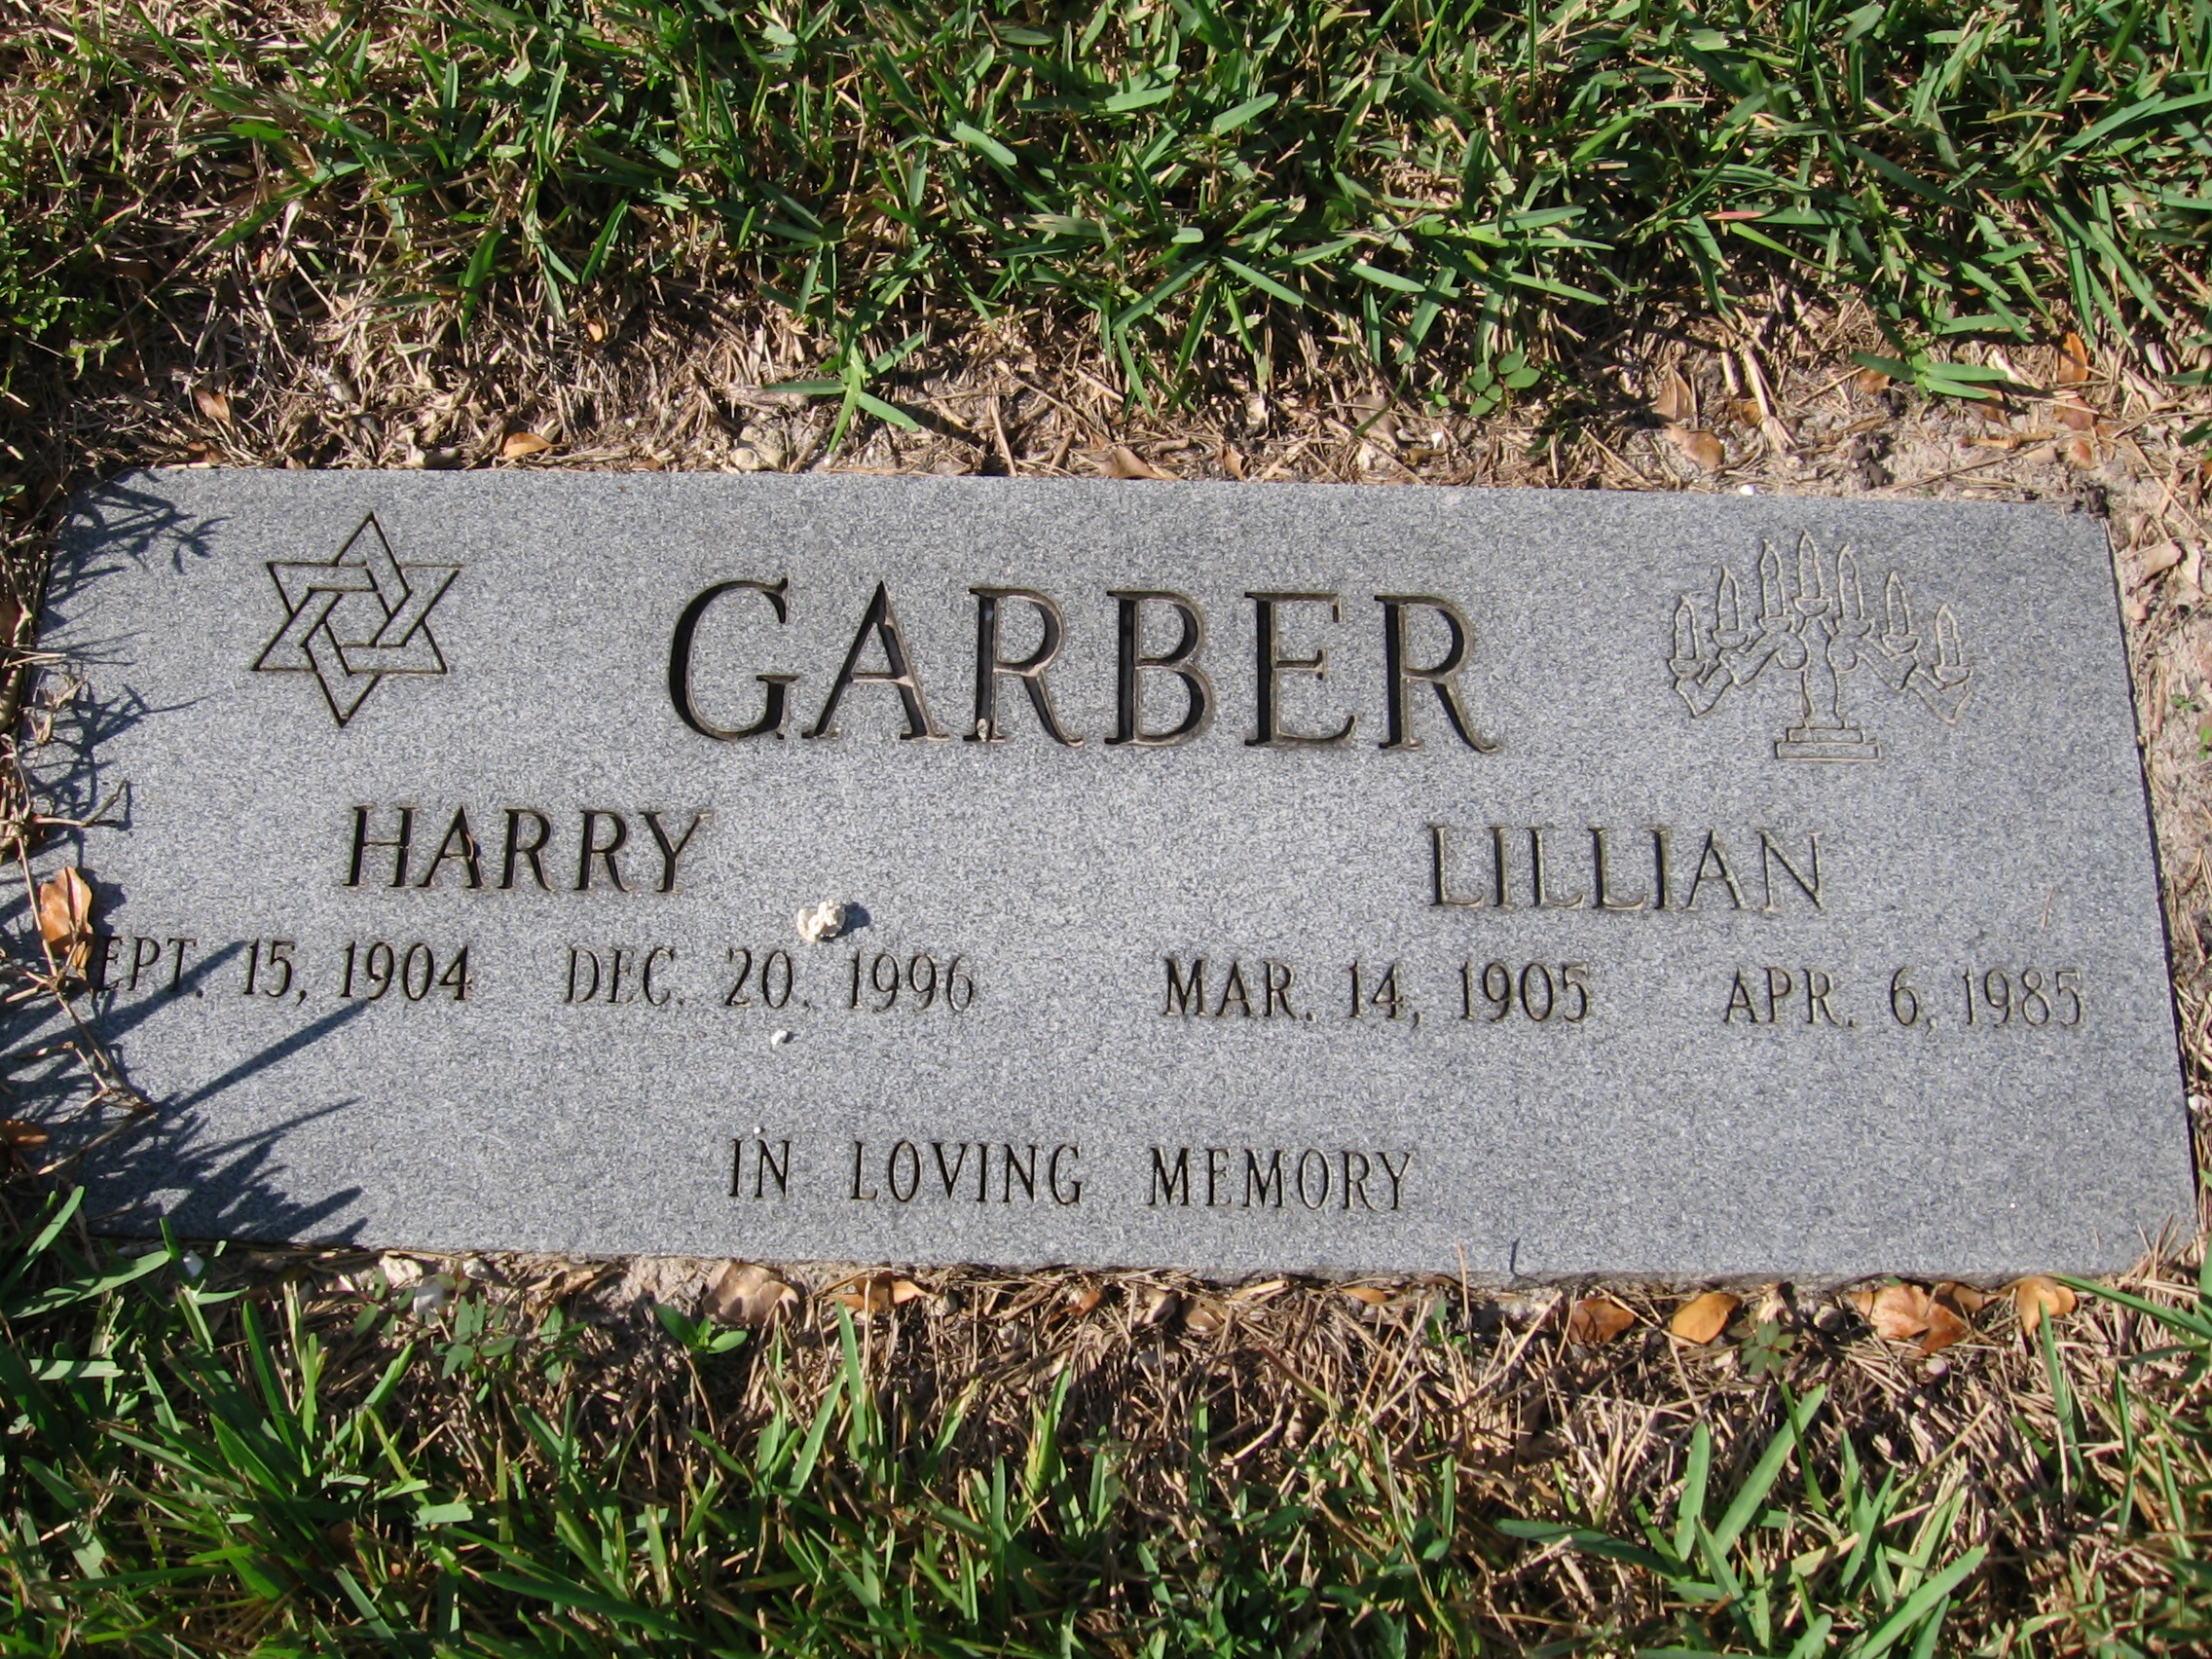 Harry Garber